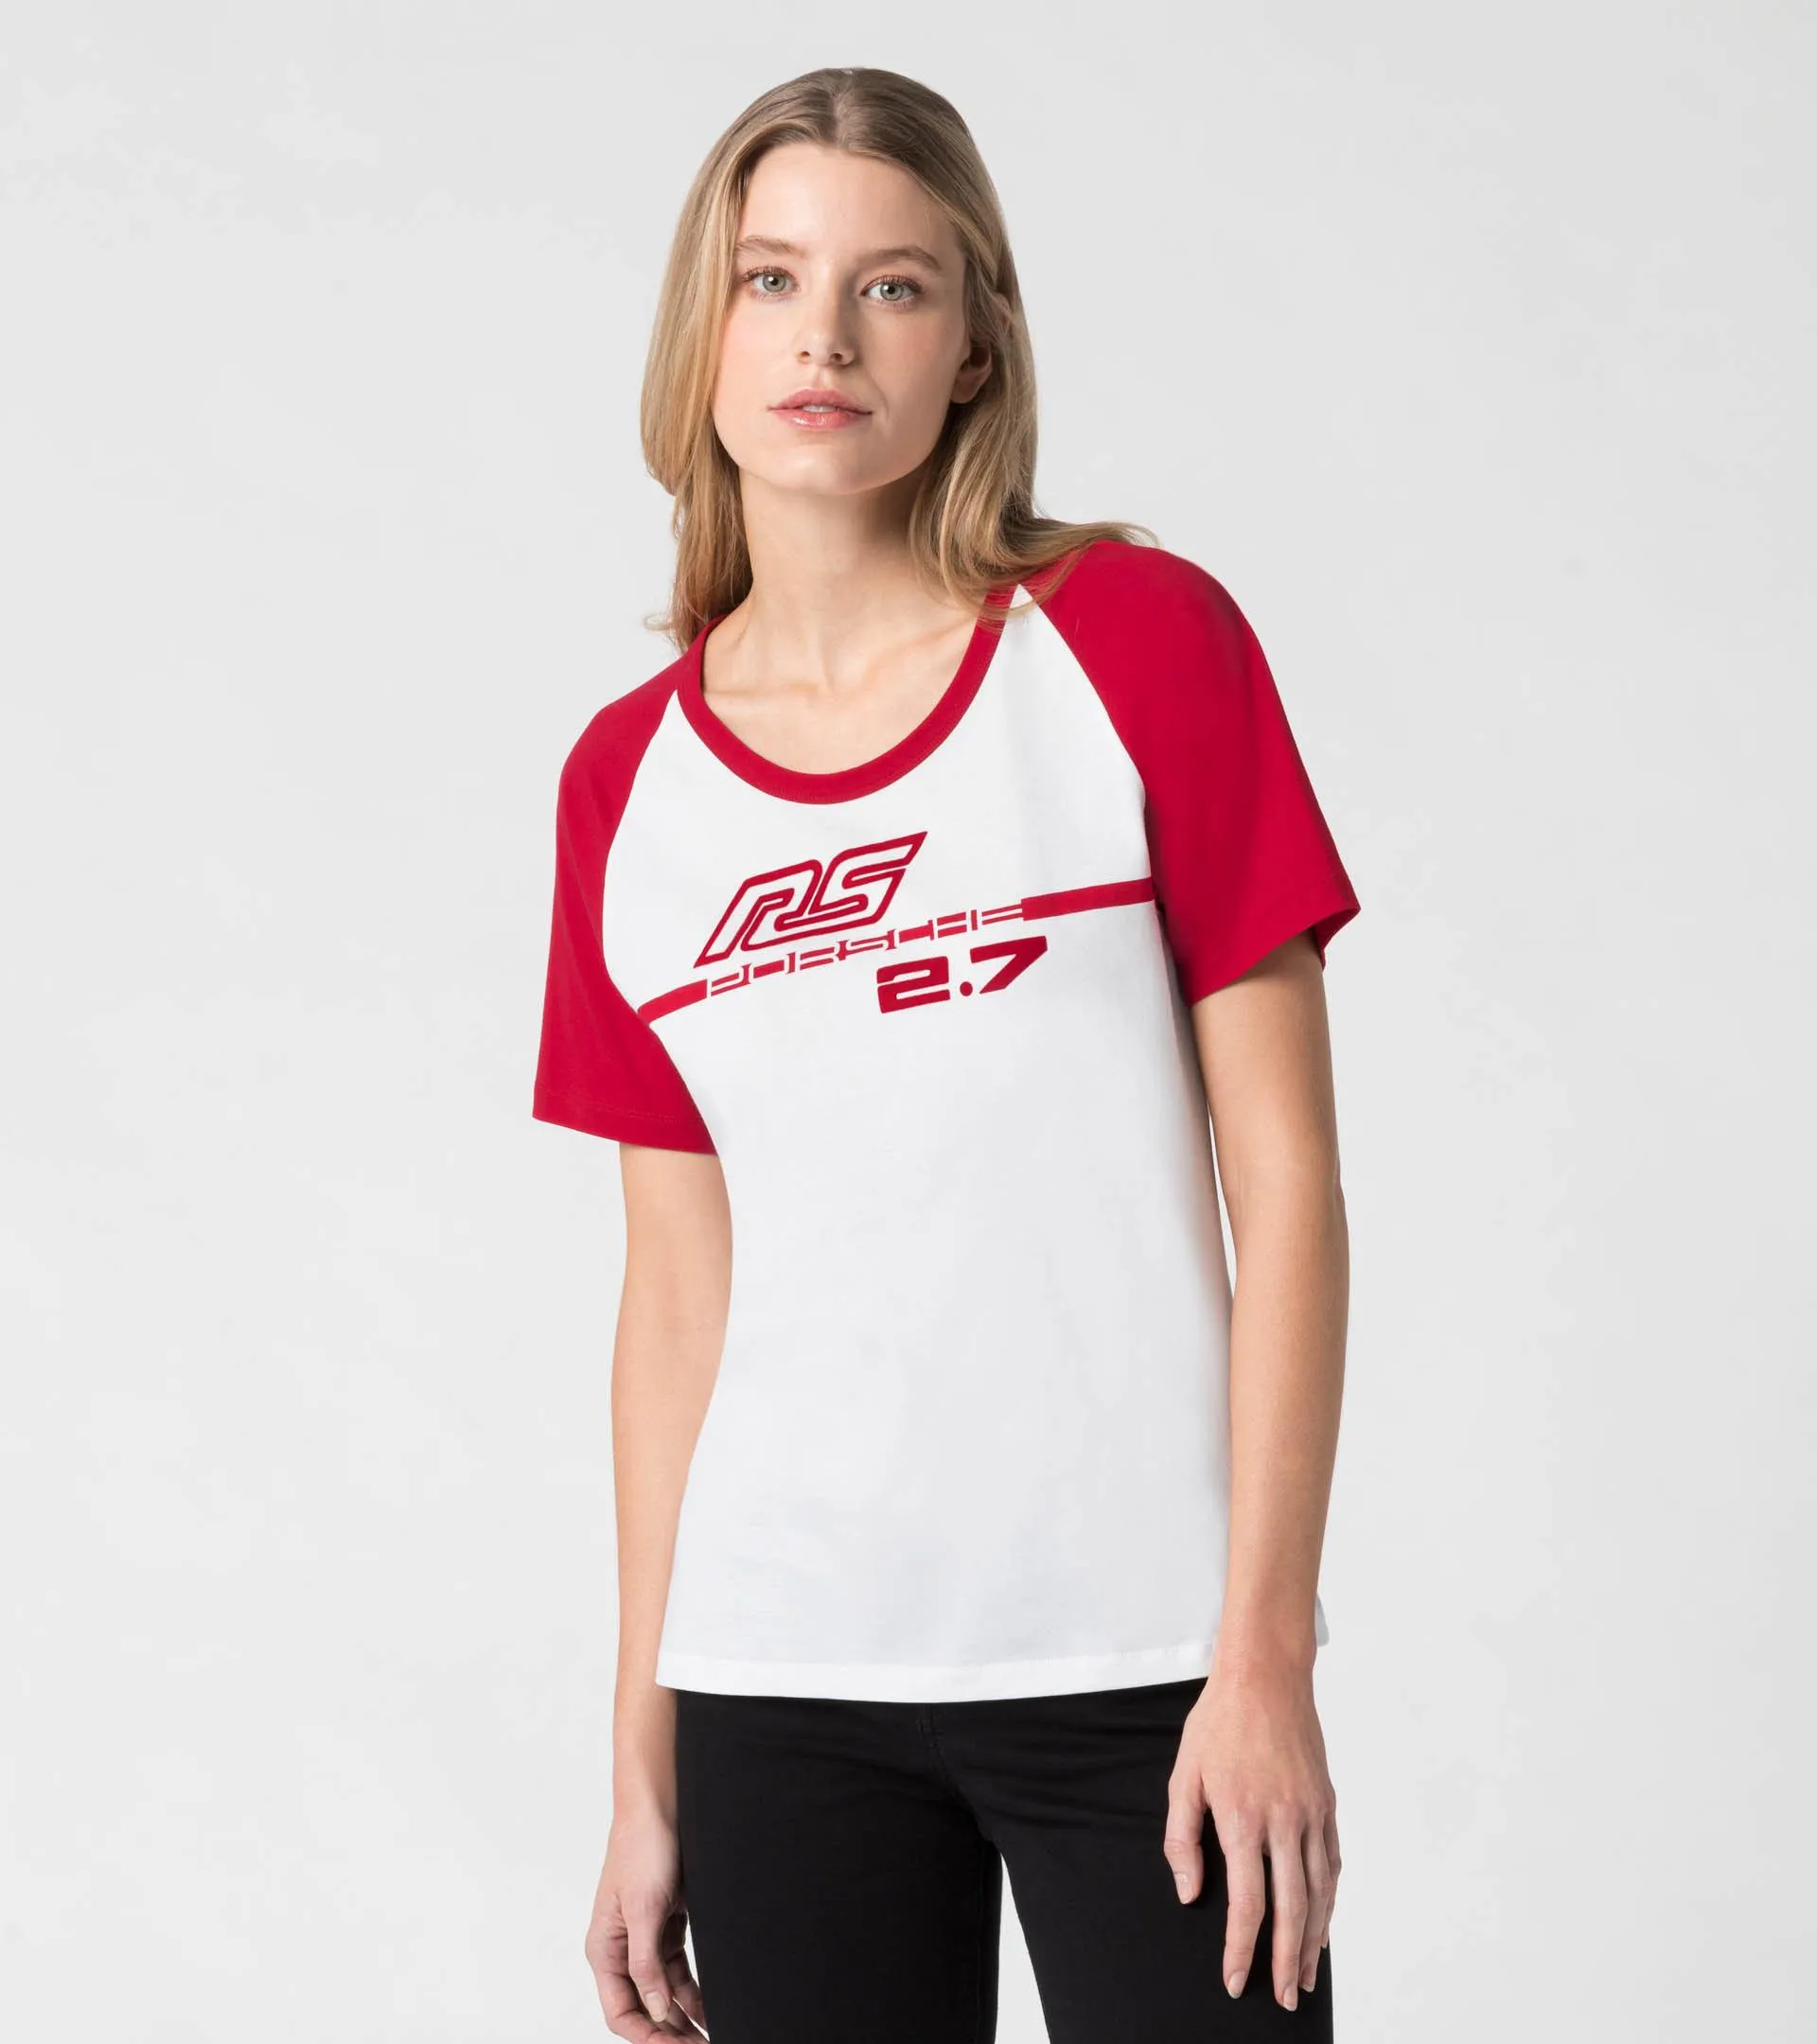 T-Shirt Damen – RS 2.7